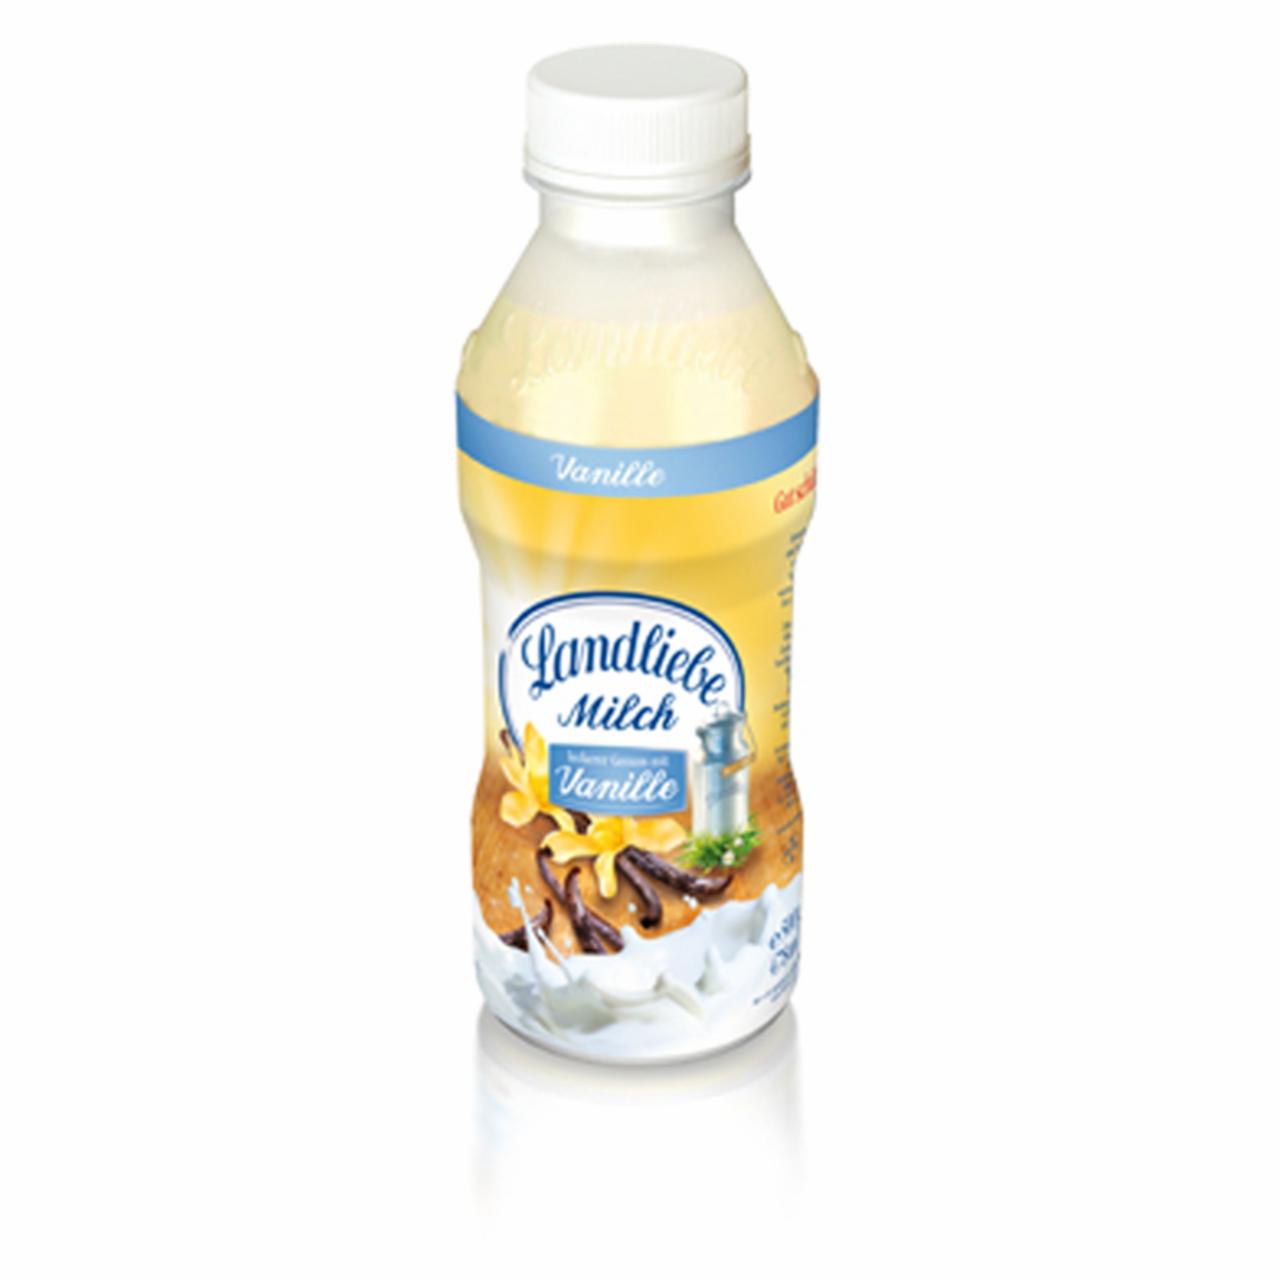 Képek - Landliebe vaníliás tej 500 g